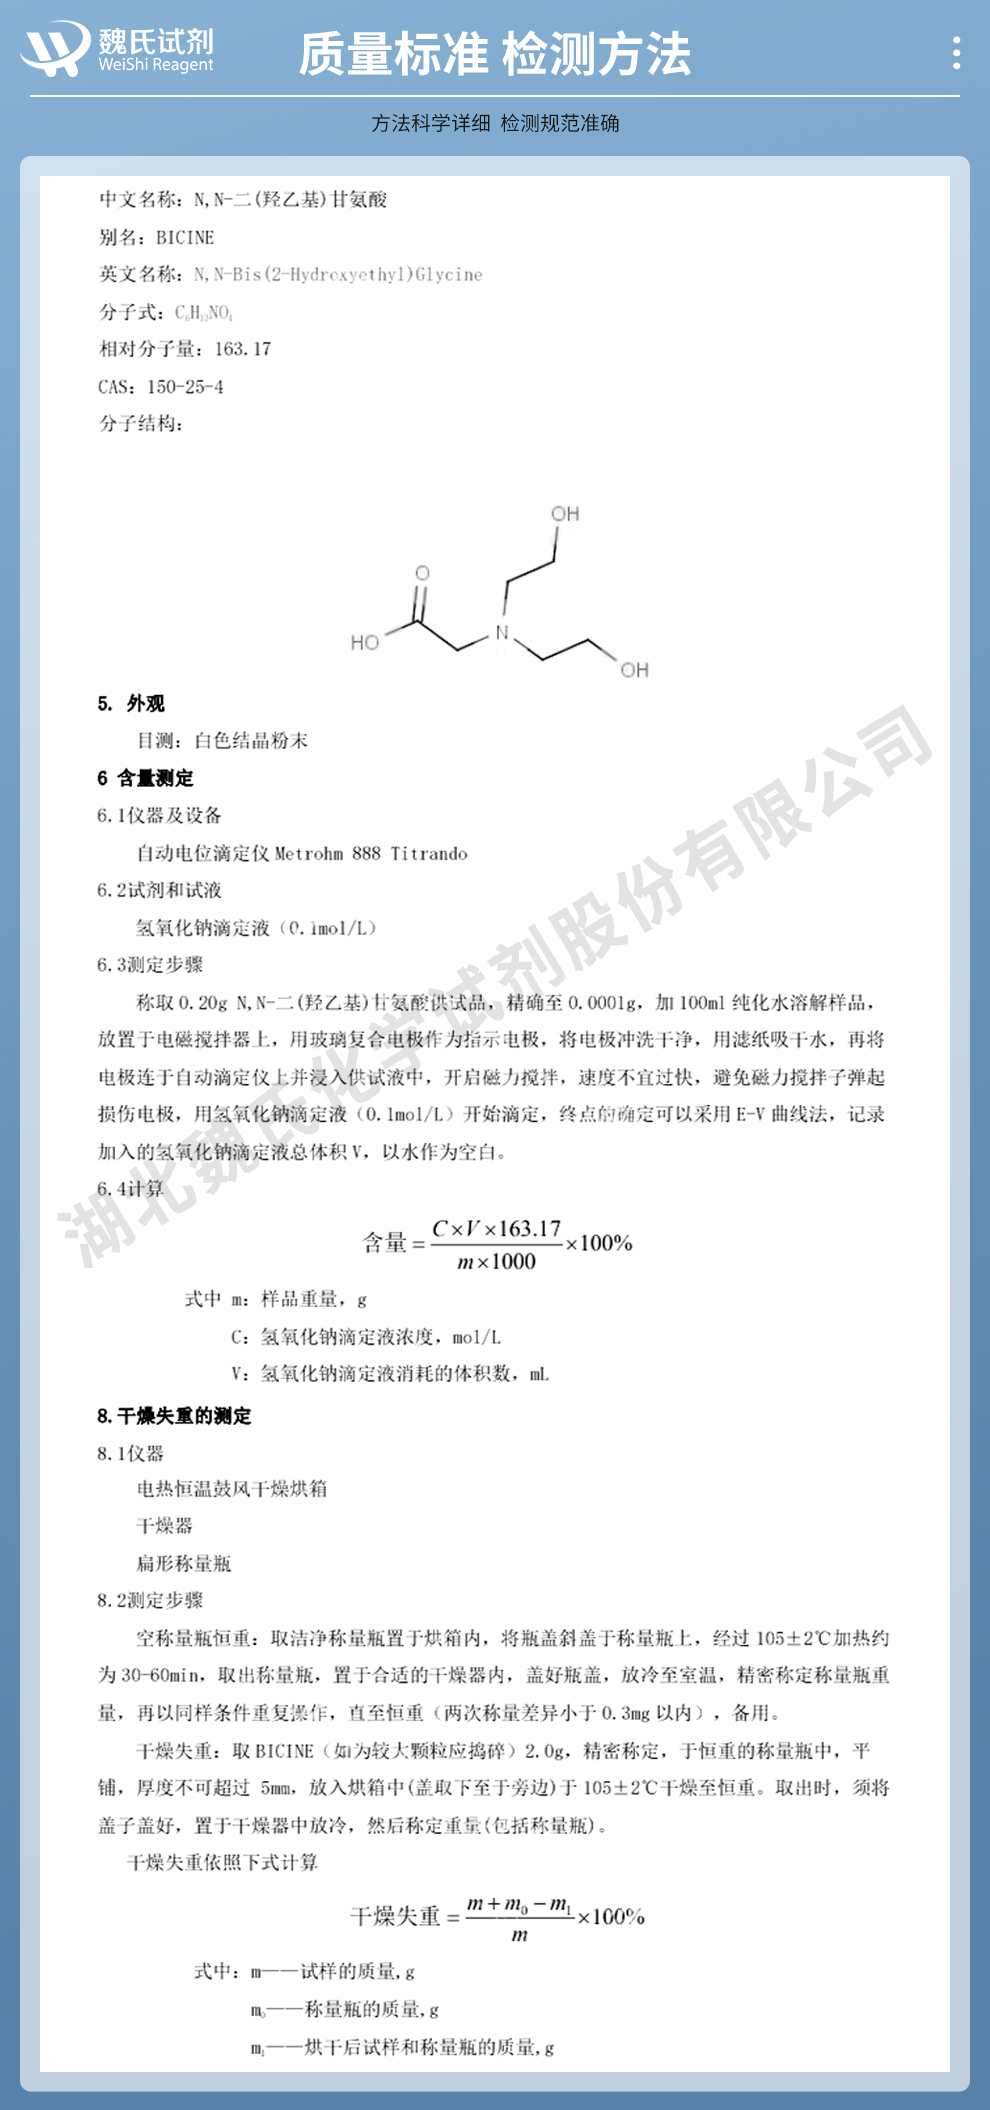 N,N-二羟乙基甘氨酸；N,N-二(2-羟乙基)甘氨酸；BICINE质量标准和检测方法